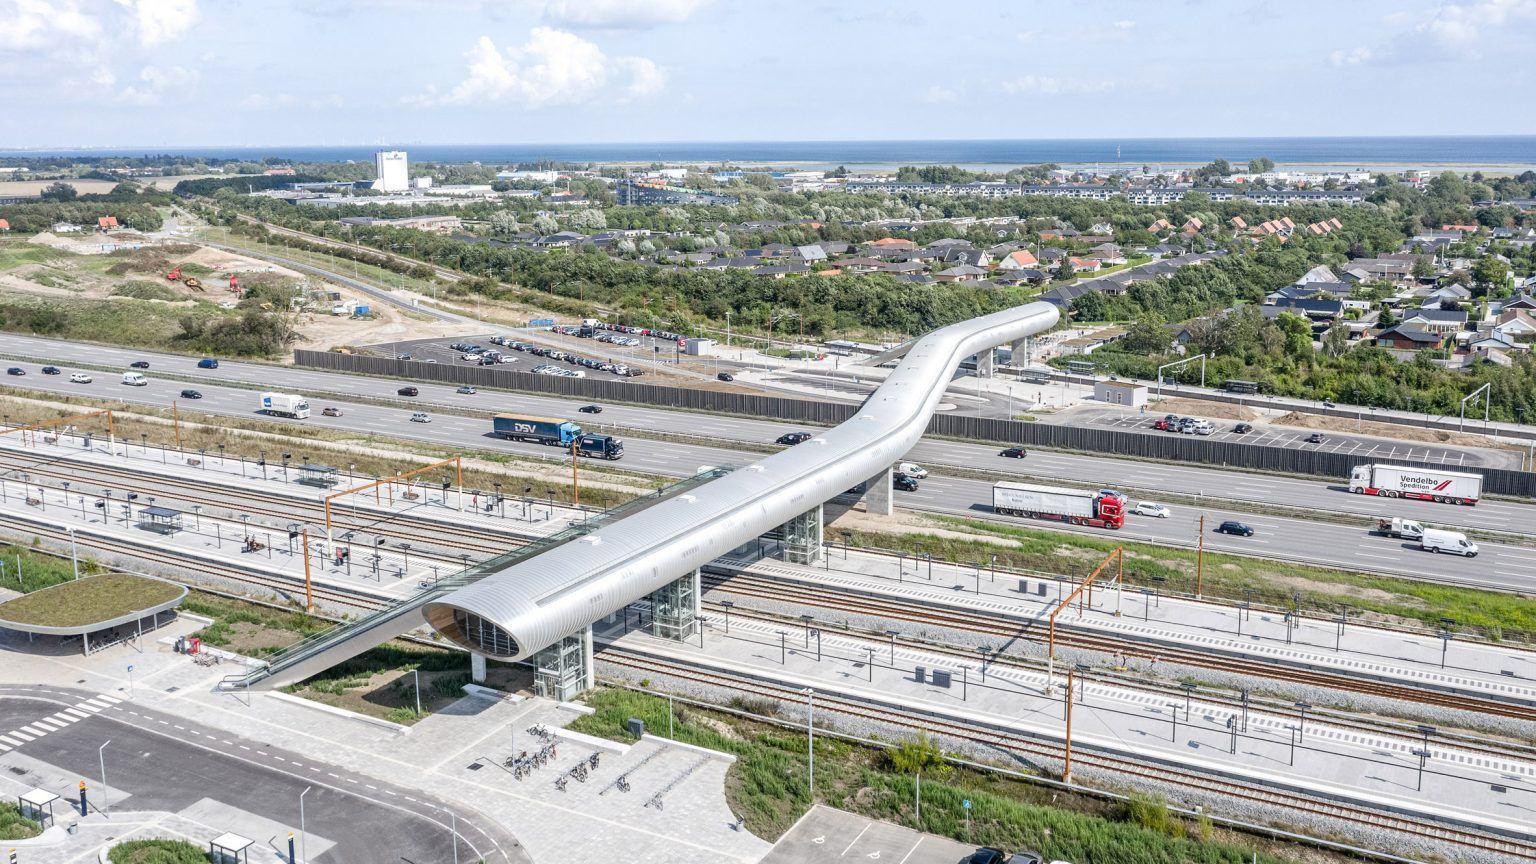 Футуристическая соломинка: в Копенгагене построили странный пешеходный мост над автострадой